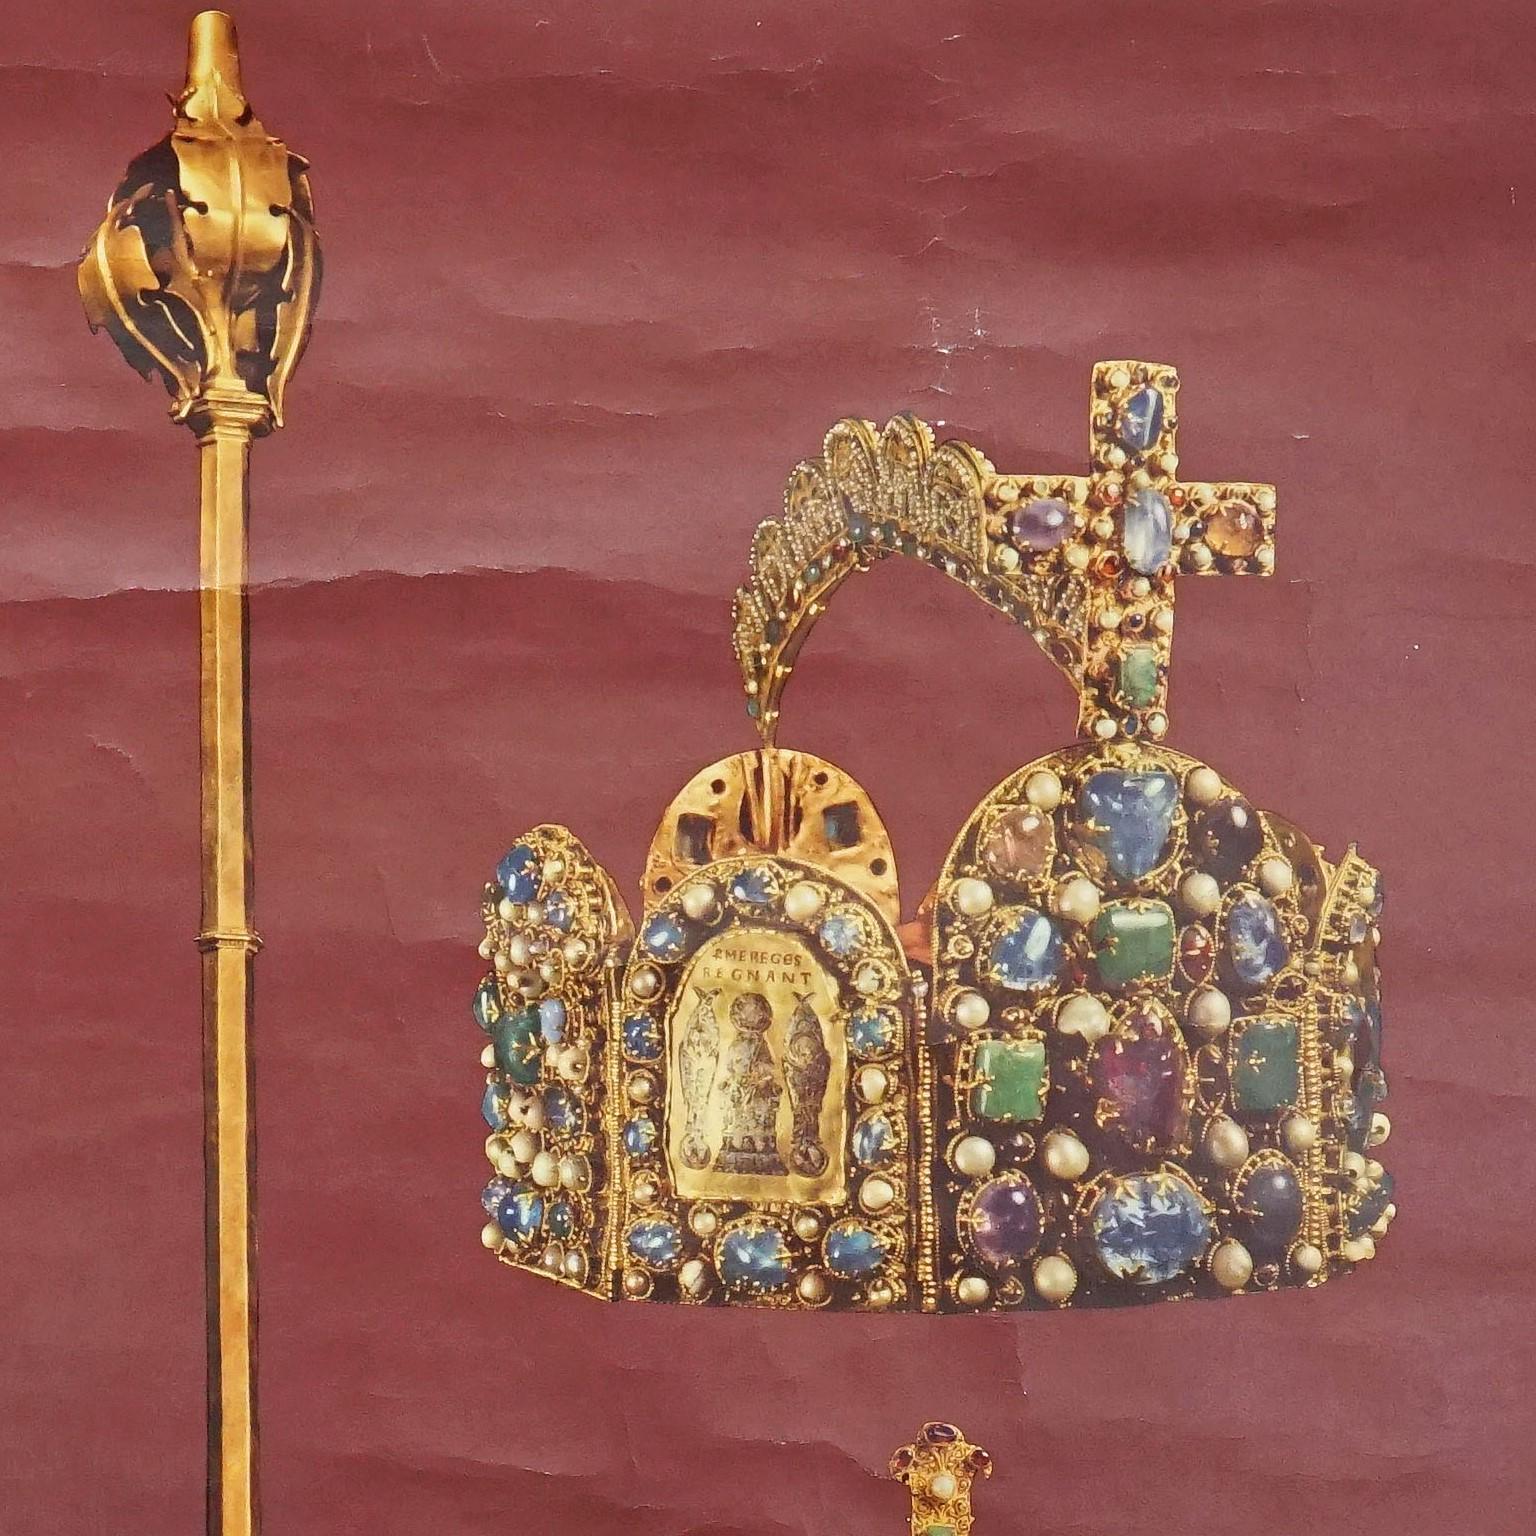 Le tableau mural à tirettes vintage illustre les insignes du couronnement du Saint Empire romain germanique. Publié par Verlag der Neue Schulmann Stuttgart No 4085. Impression colorée sur papier renforcé par de la toile.
La carte murale est